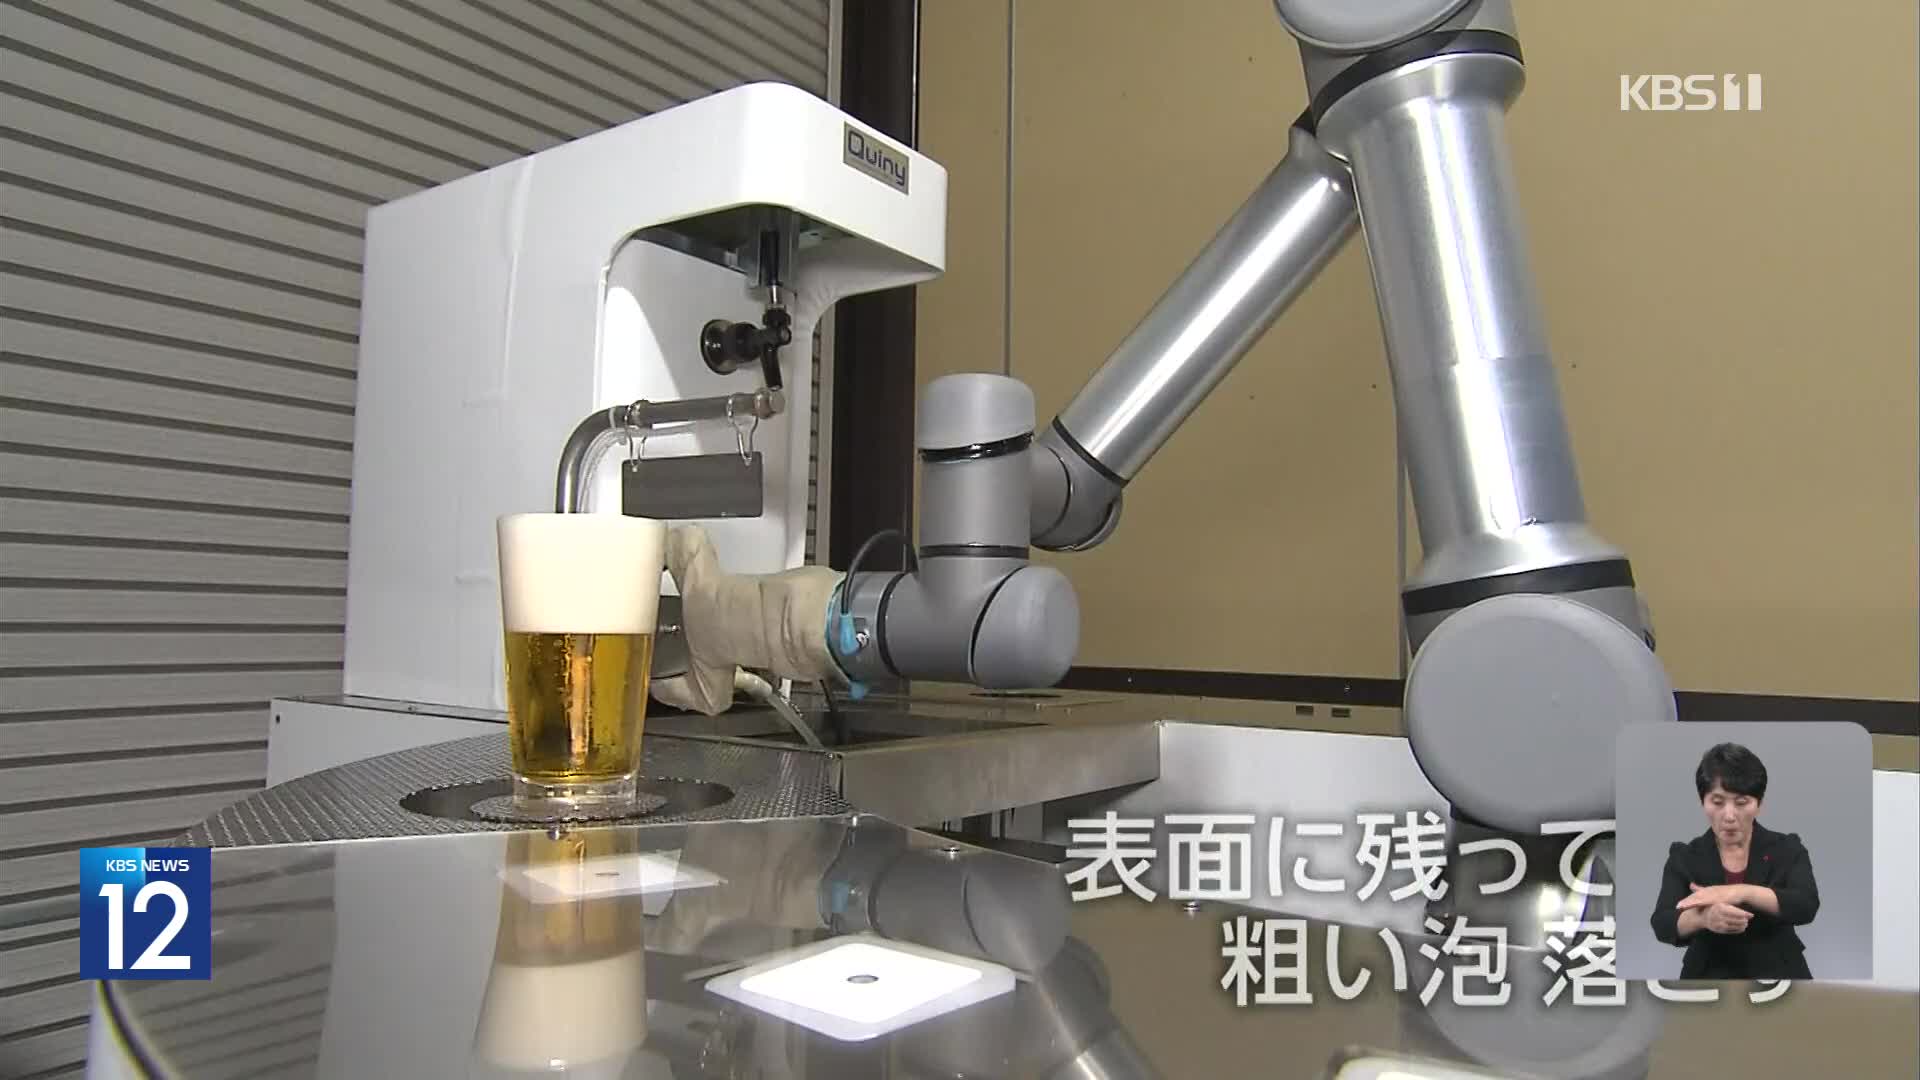 일본, “전문 솜씨 뽐내는 일도 로봇으로”